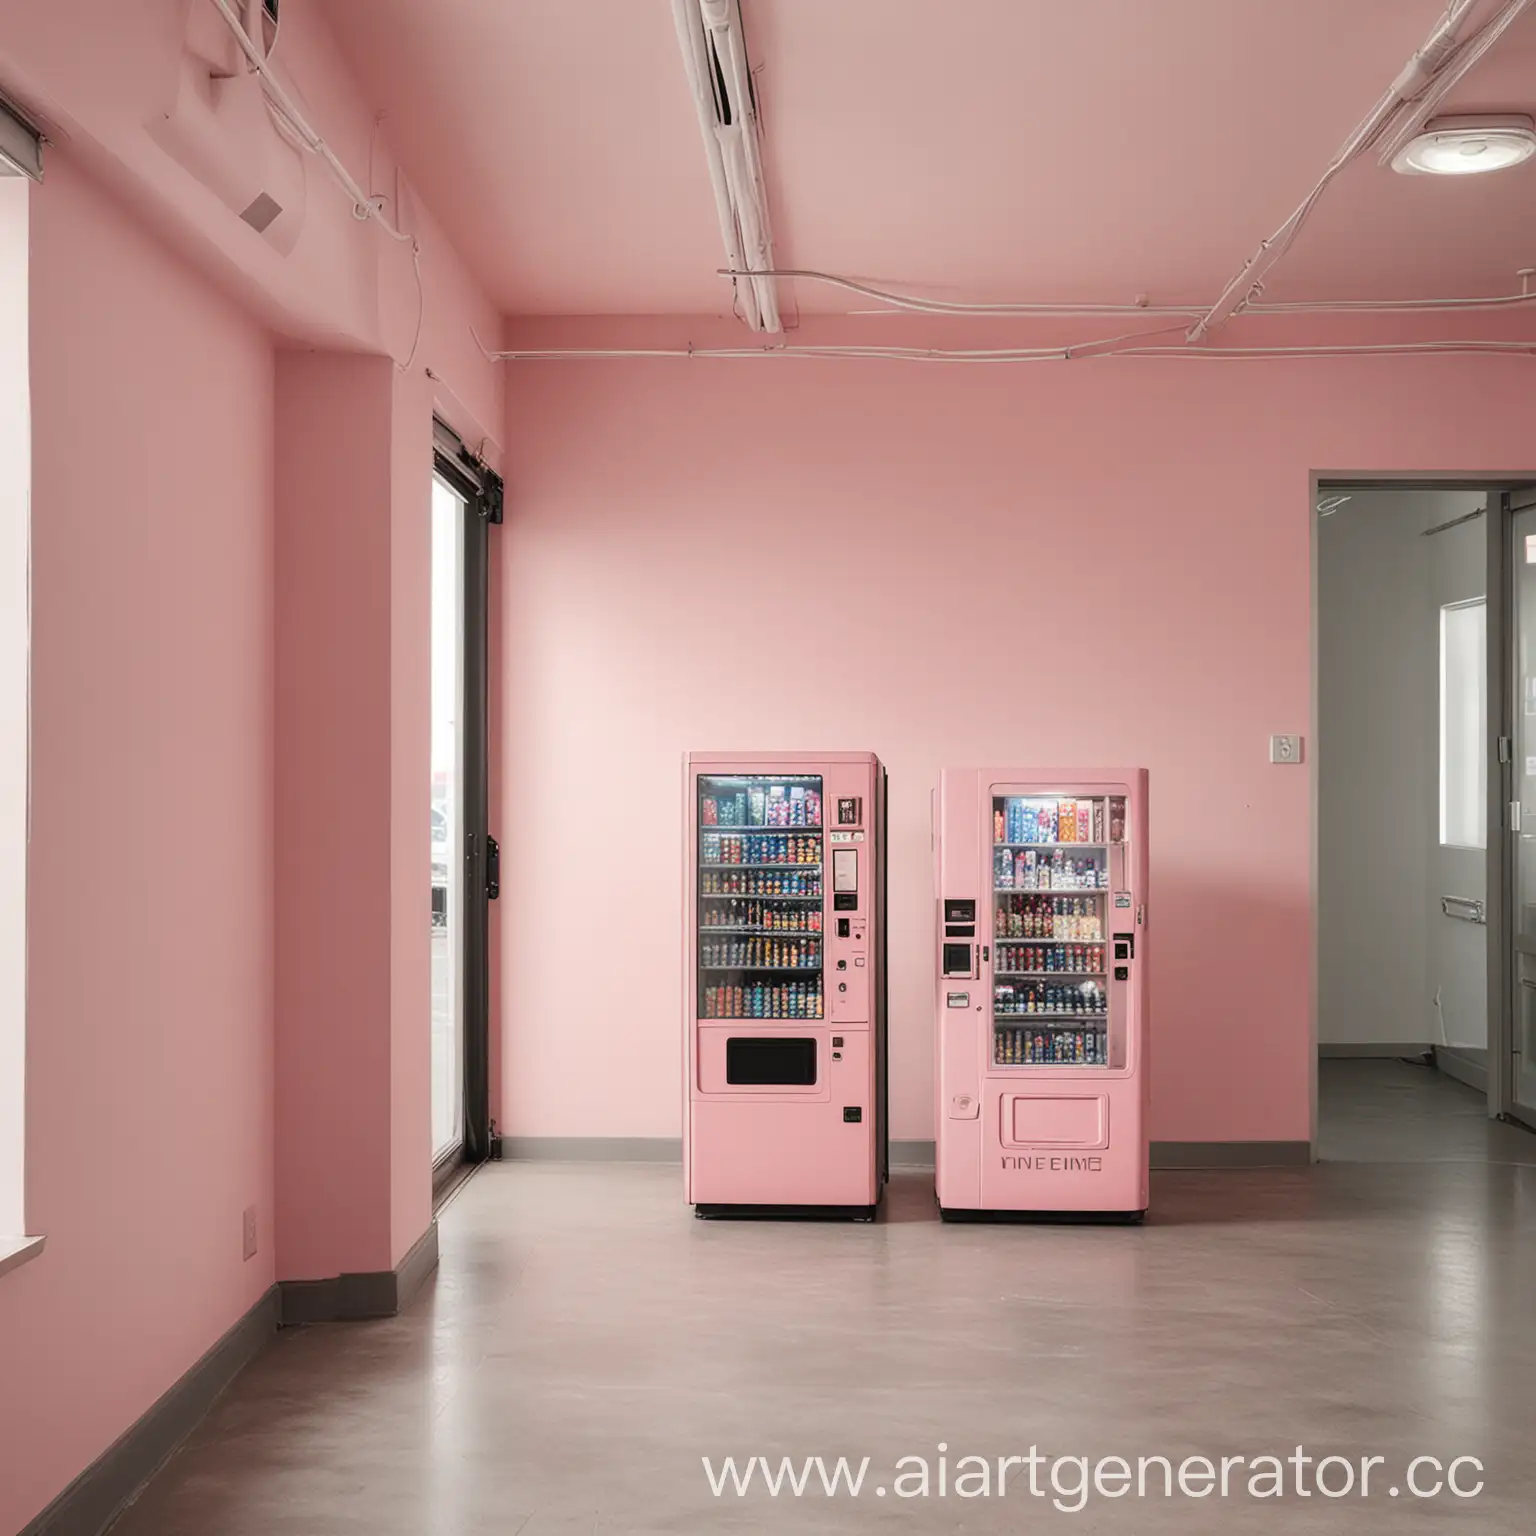 коворкинг, много комнат, бледно розовые стены, 
 один автомат с едой, люди, двери, серый пол
